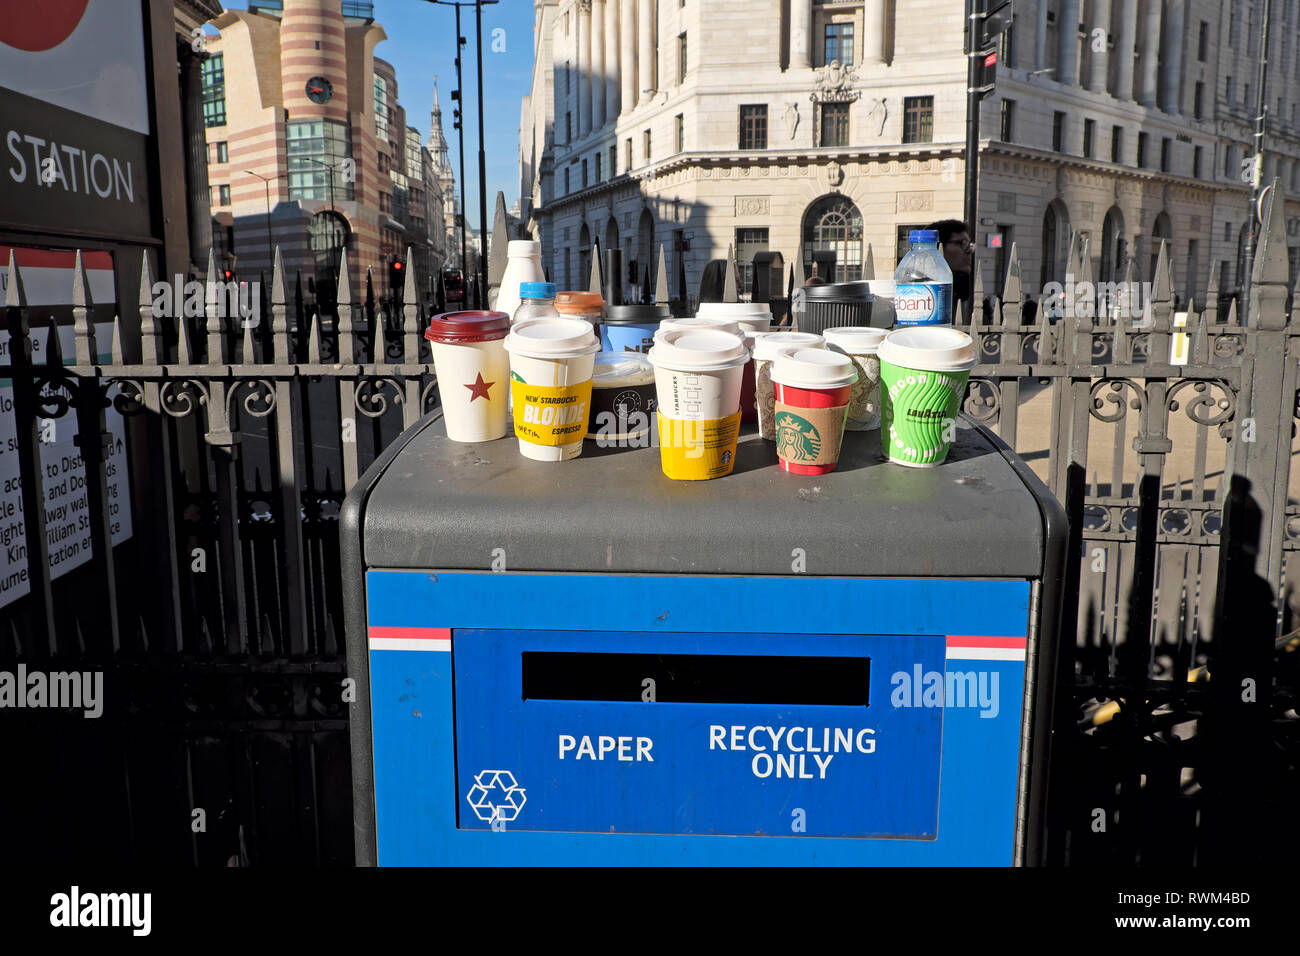 El papel y el plástico vacío vasos y botellas de plástico reciclado de papel permanente de una única bandeja de residuos de la estación de metro de banco en la Ciudad de London UK KATHY DEWITT Foto de stock